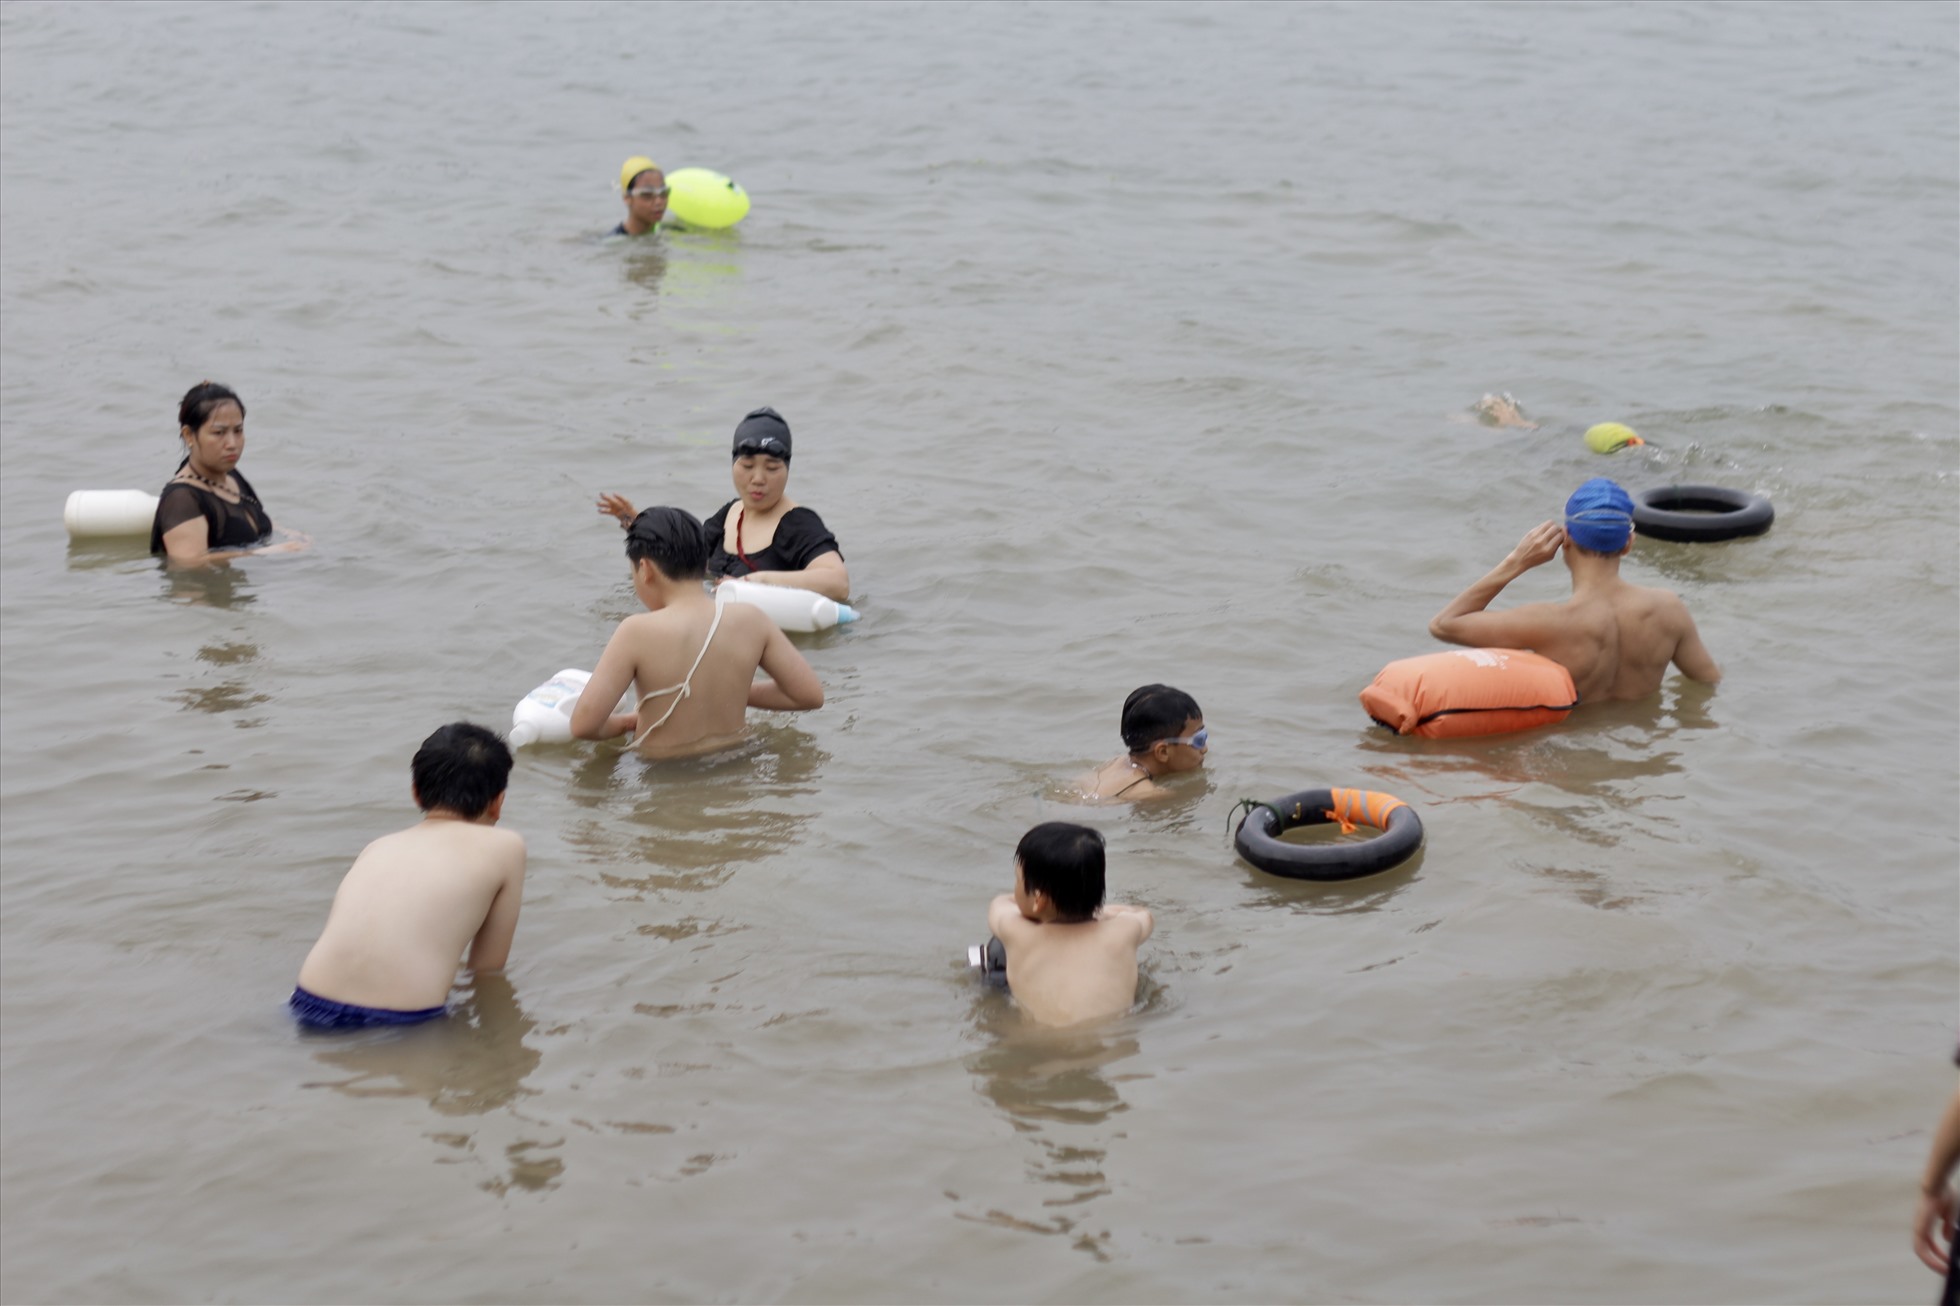 Lác đác vài người trang bị vật dụng bơi chuyên dụng để đảm bảo an toàn. Ảnh: Minh Hồng